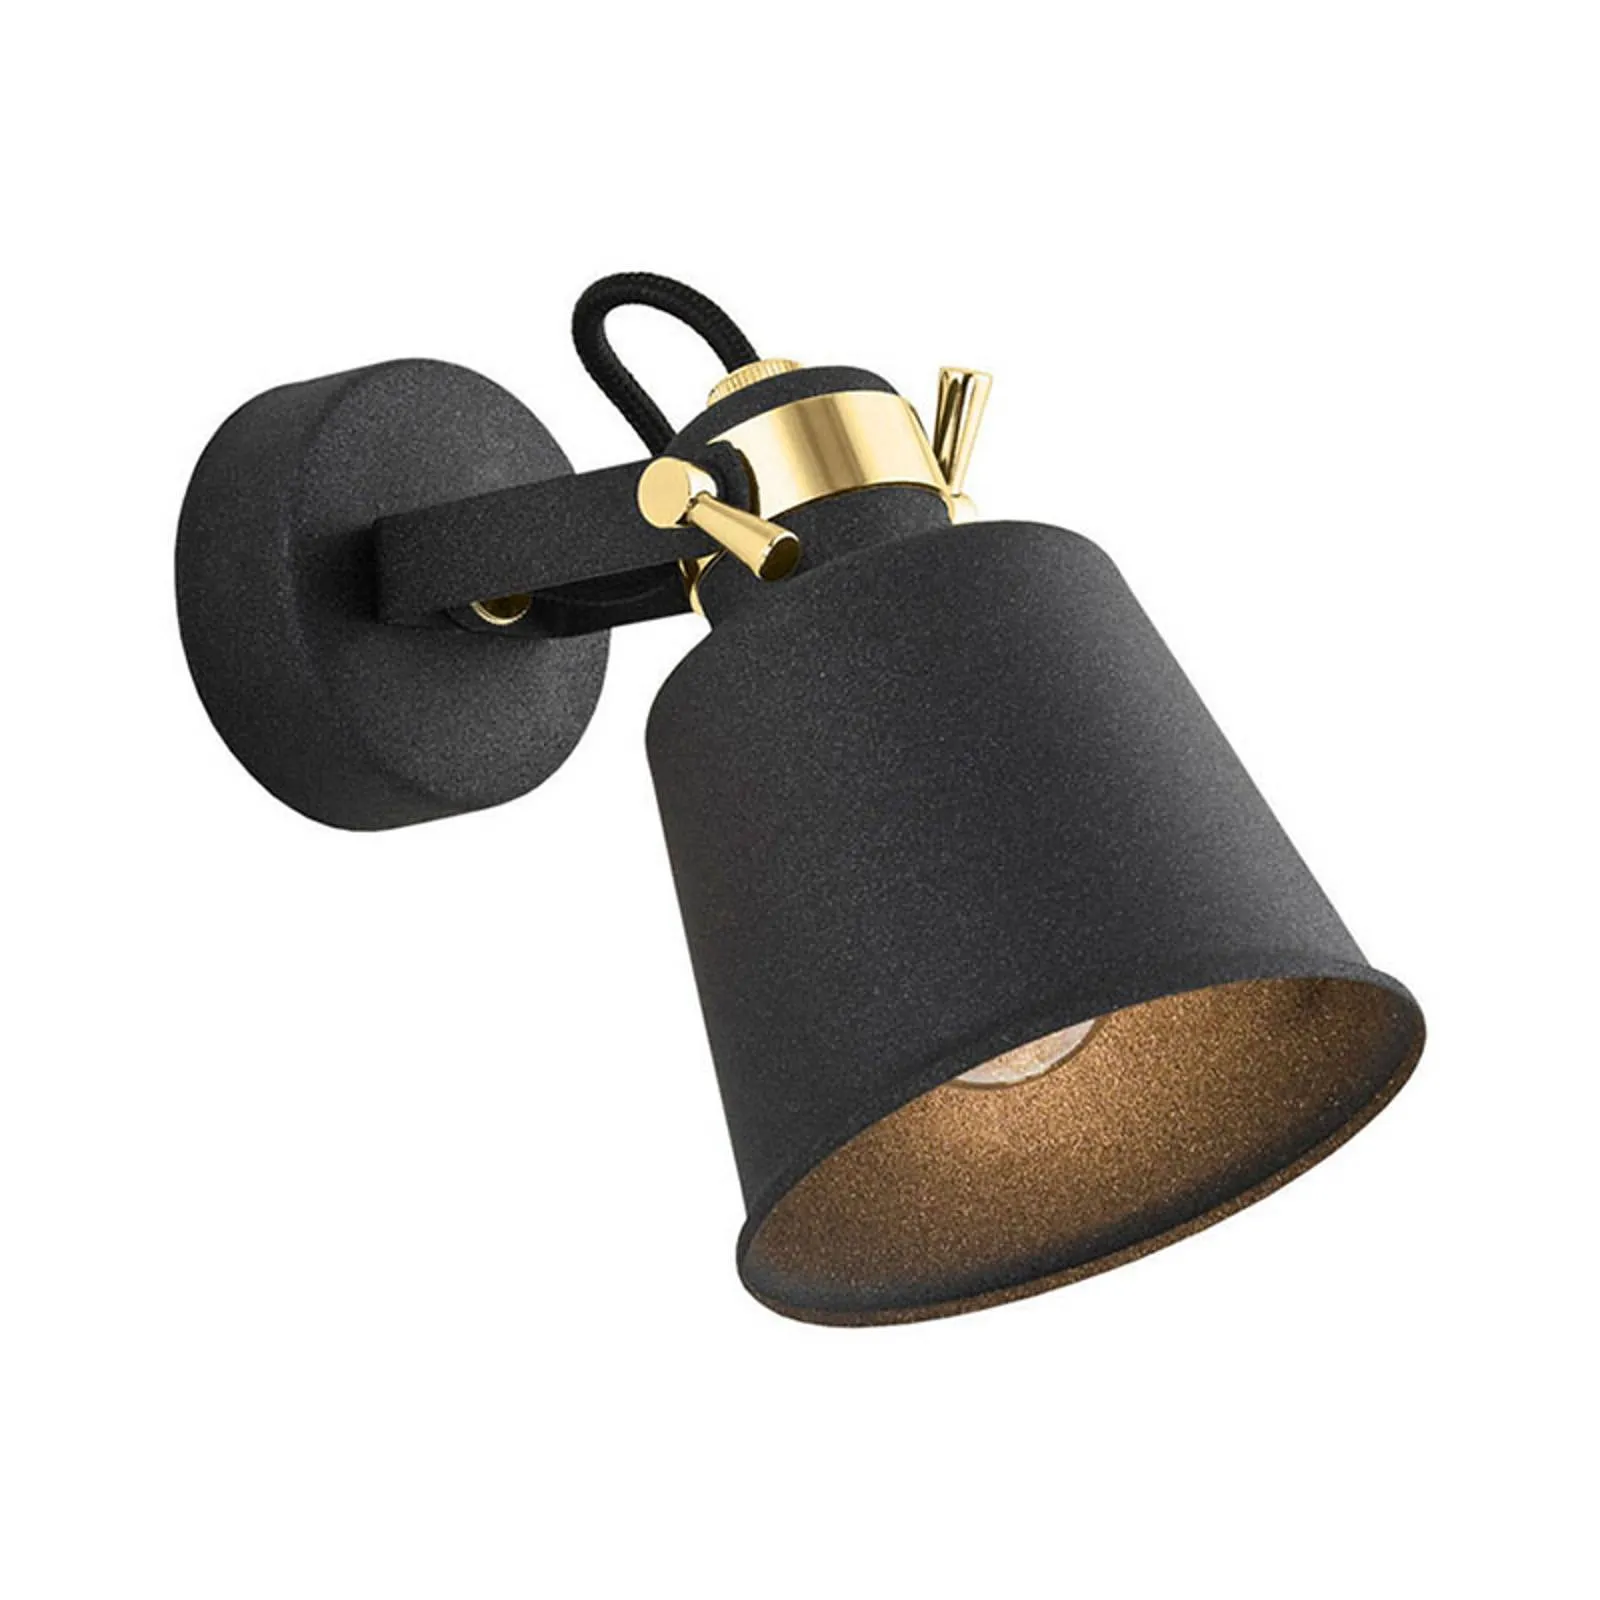 Kerava wall spotlight, one-bulb, black/brass